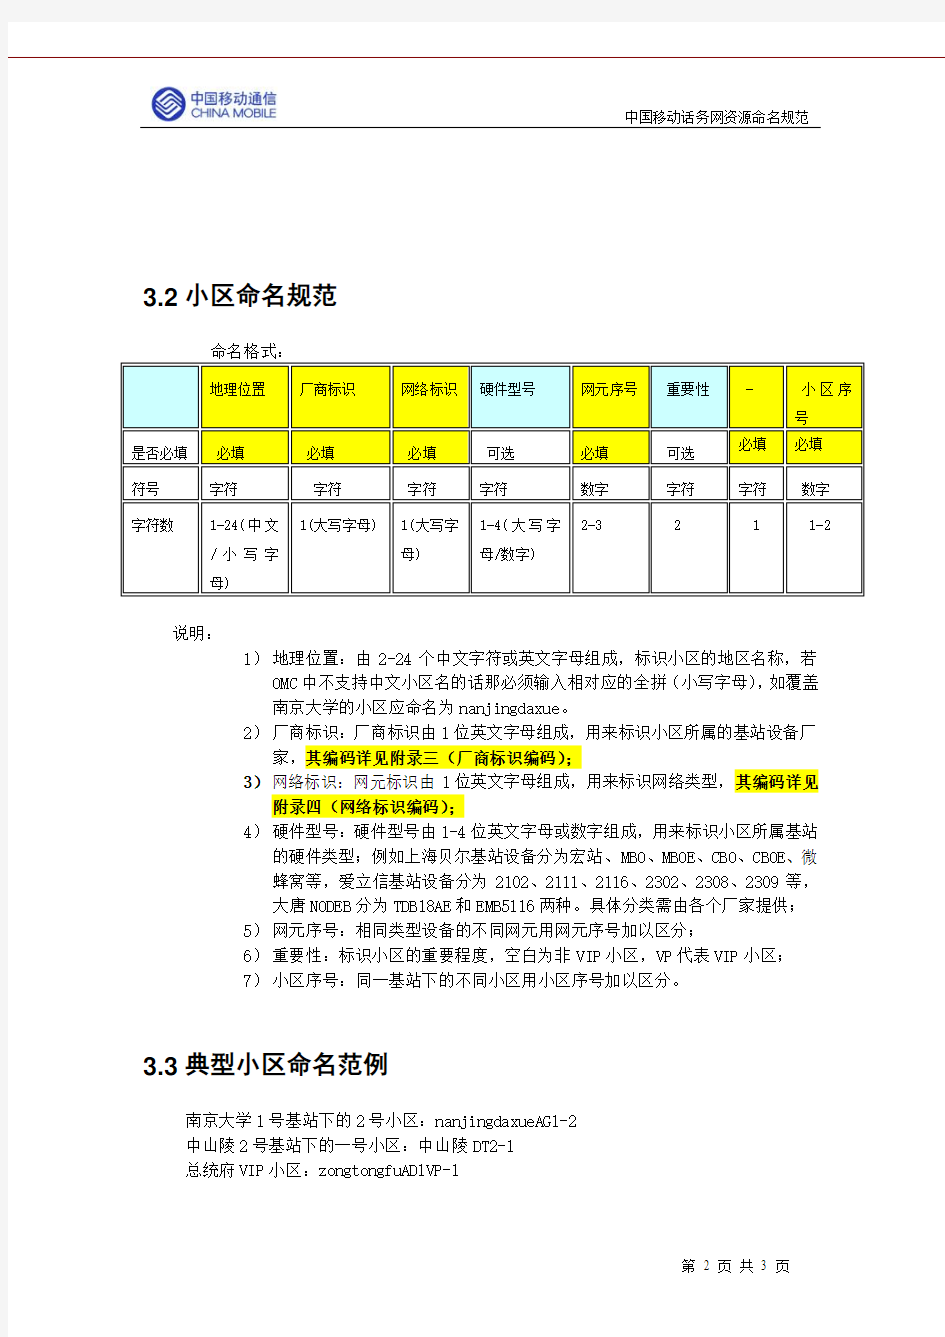 中国移动无线网资源命名规范V1.0.1